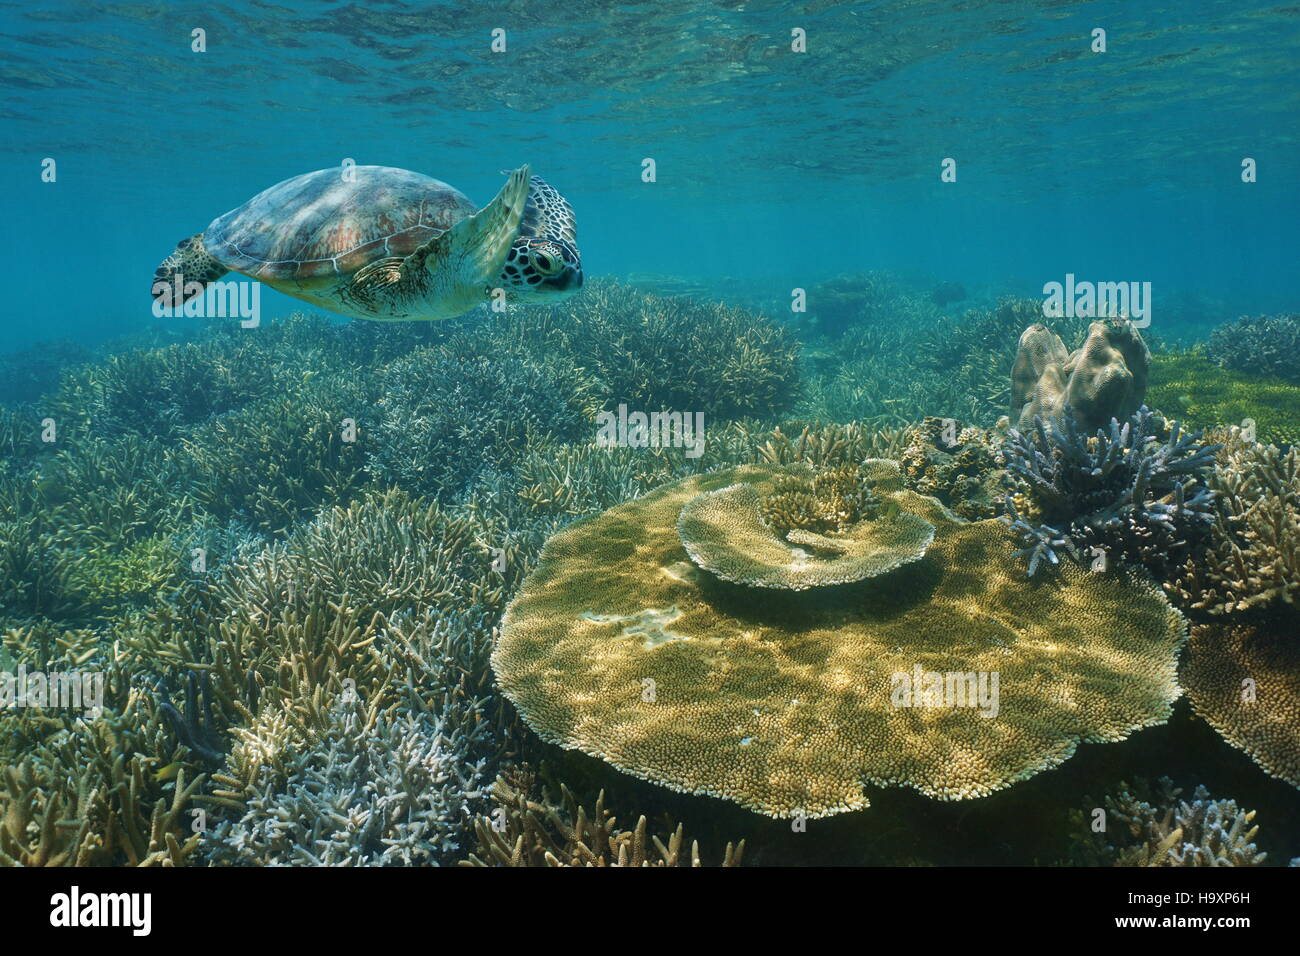 Una tartaruga verde nuoto subacqueo oltre un sano Coral reef in acque poco profonde, Nuova Caledonia, oceano pacifico del sud Foto Stock